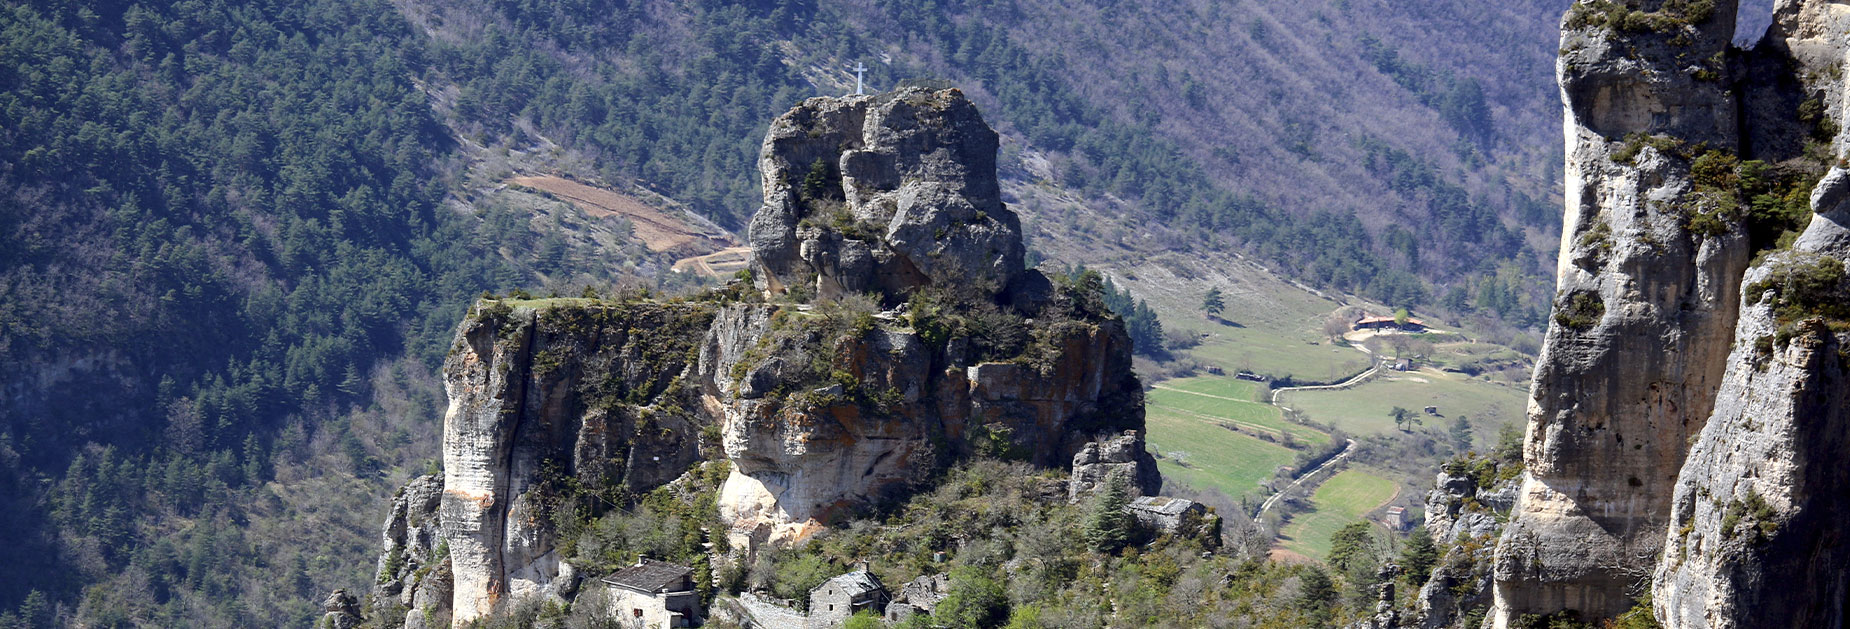 Rocher capluc Aveyron